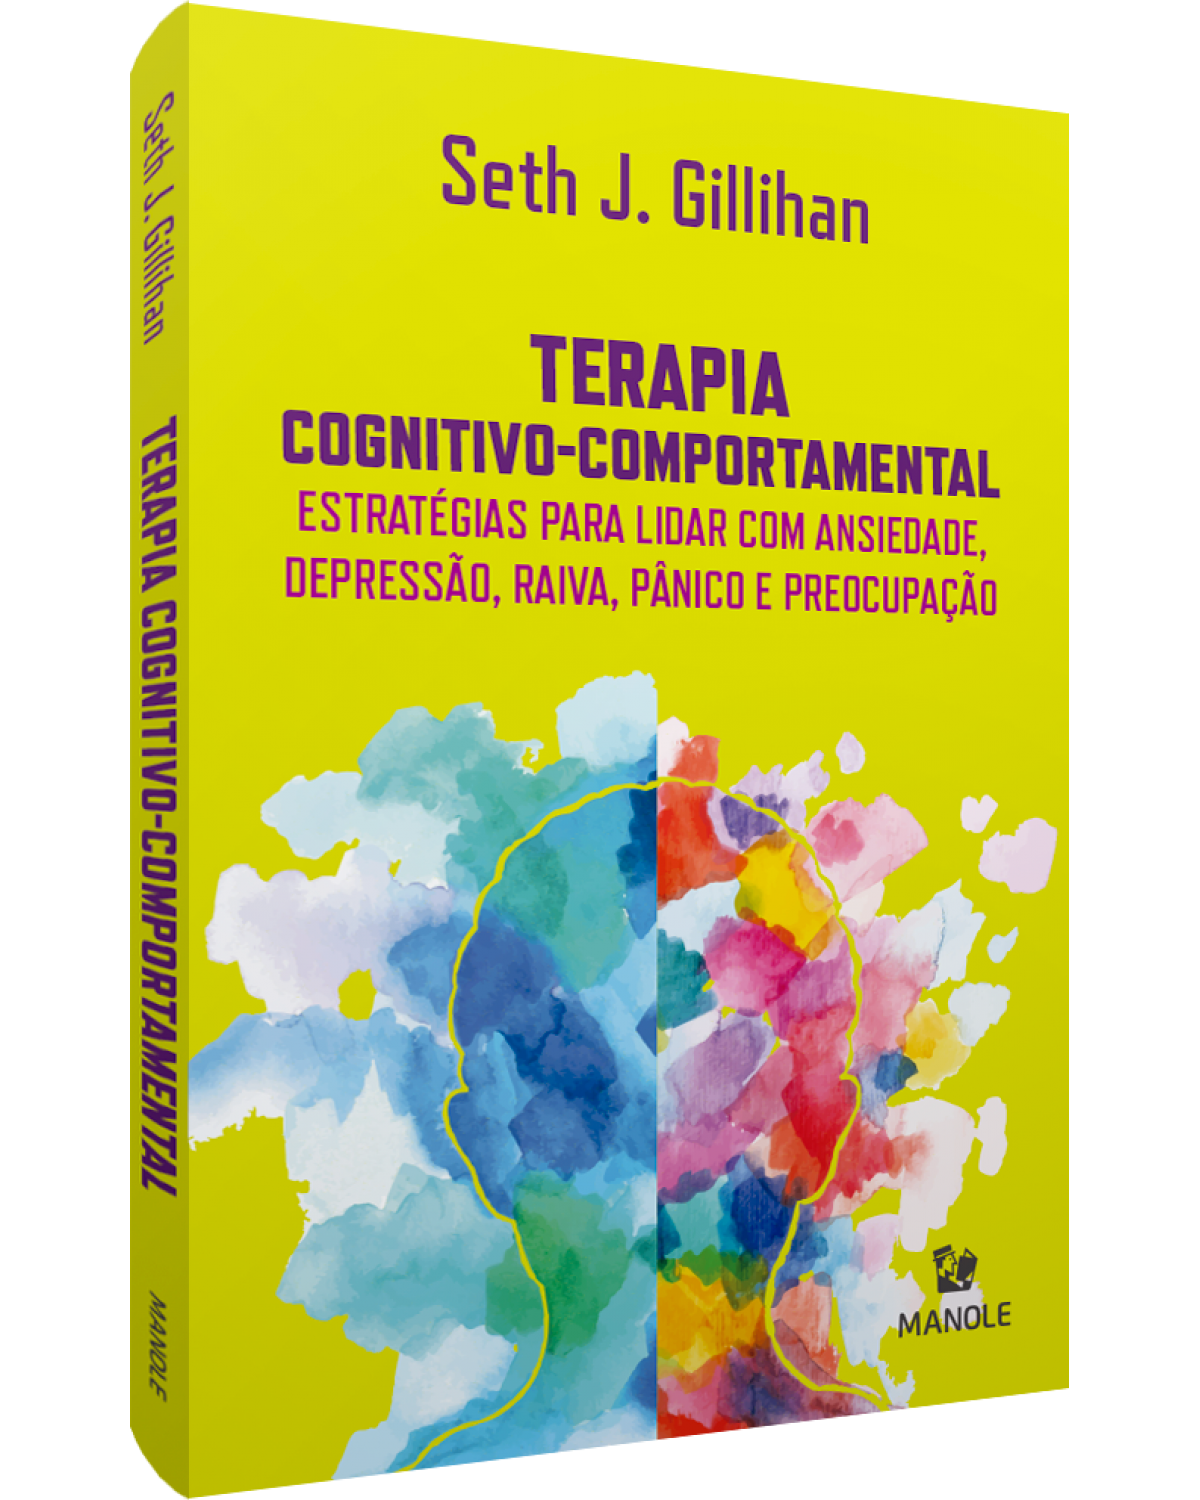 Terapia cognitivo-comportamental - estratégias para lidar com ansiedade, depressão, raiva, pânico e preocupação - 1ª Edição | 2020